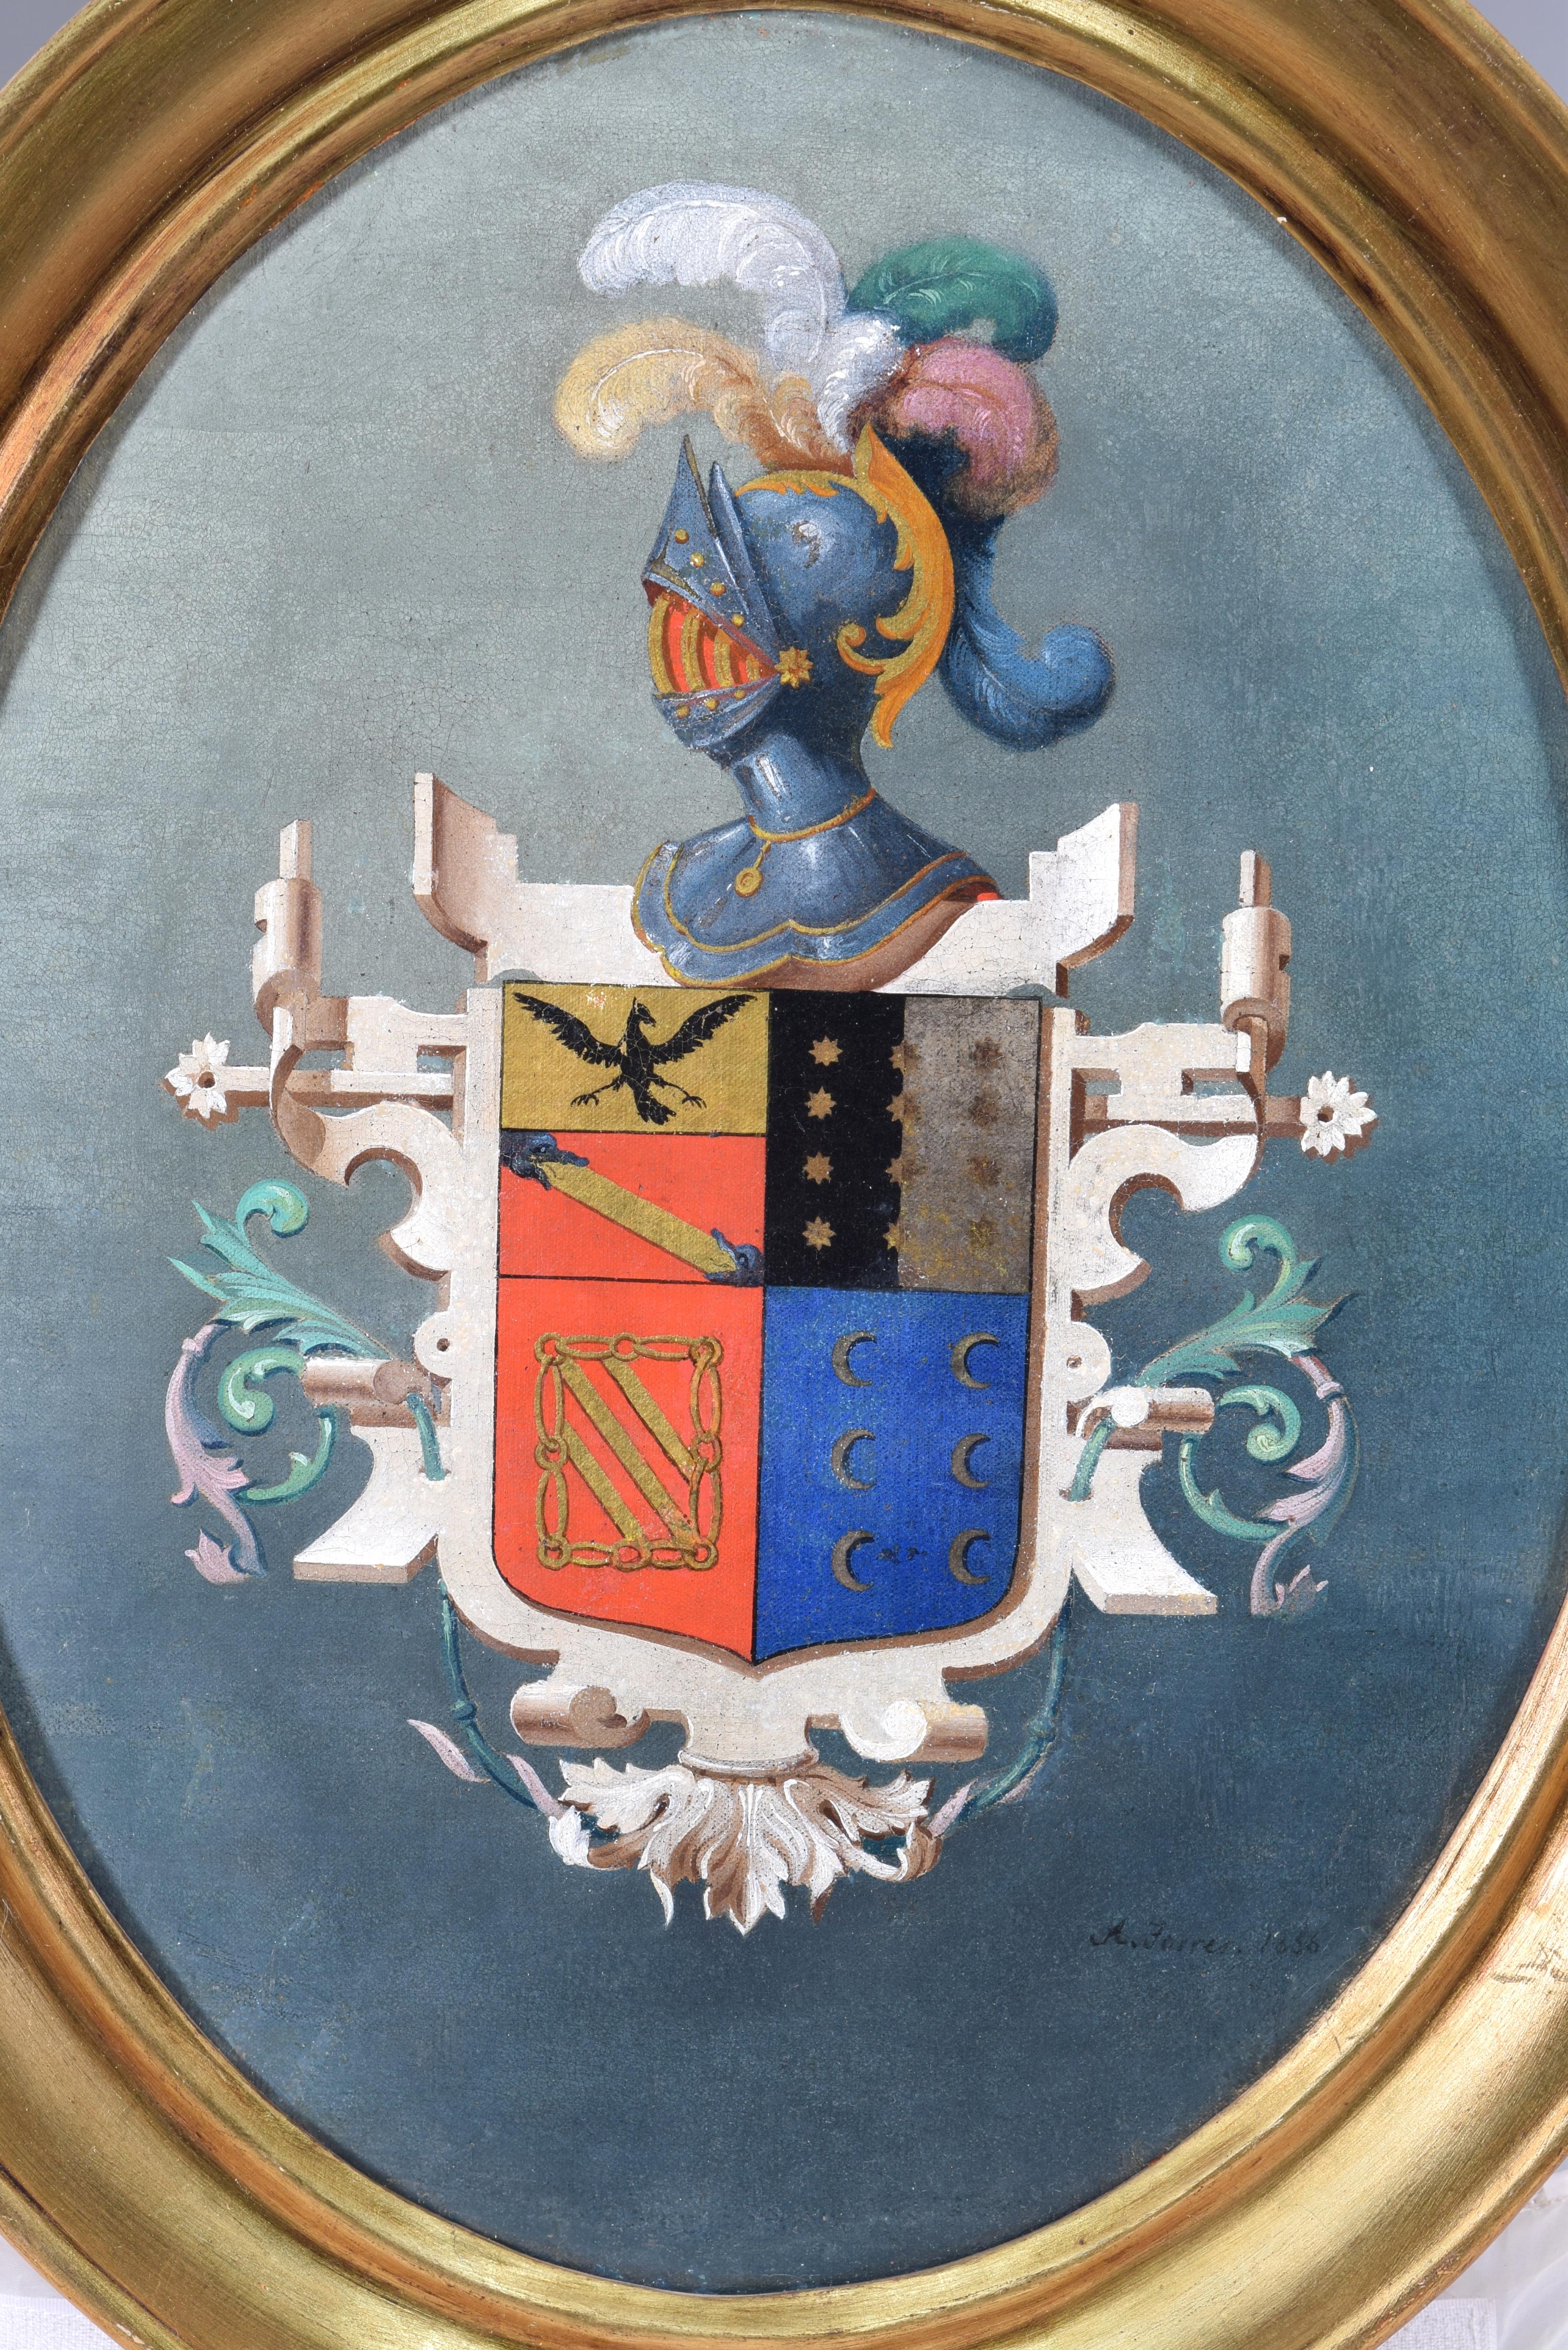 Wappenschild. Öl auf Leinwand. TORRES, A. Spanische Schule, 1856. 
Unterzeichnet und datiert. 
Dieses Werk zeigt ein heraldisches Wappen auf blauem Hintergrund mit verschiedenen Farbtönen in einem ovalen, gerahmten Rahmen. Das zentrale (und einzige)